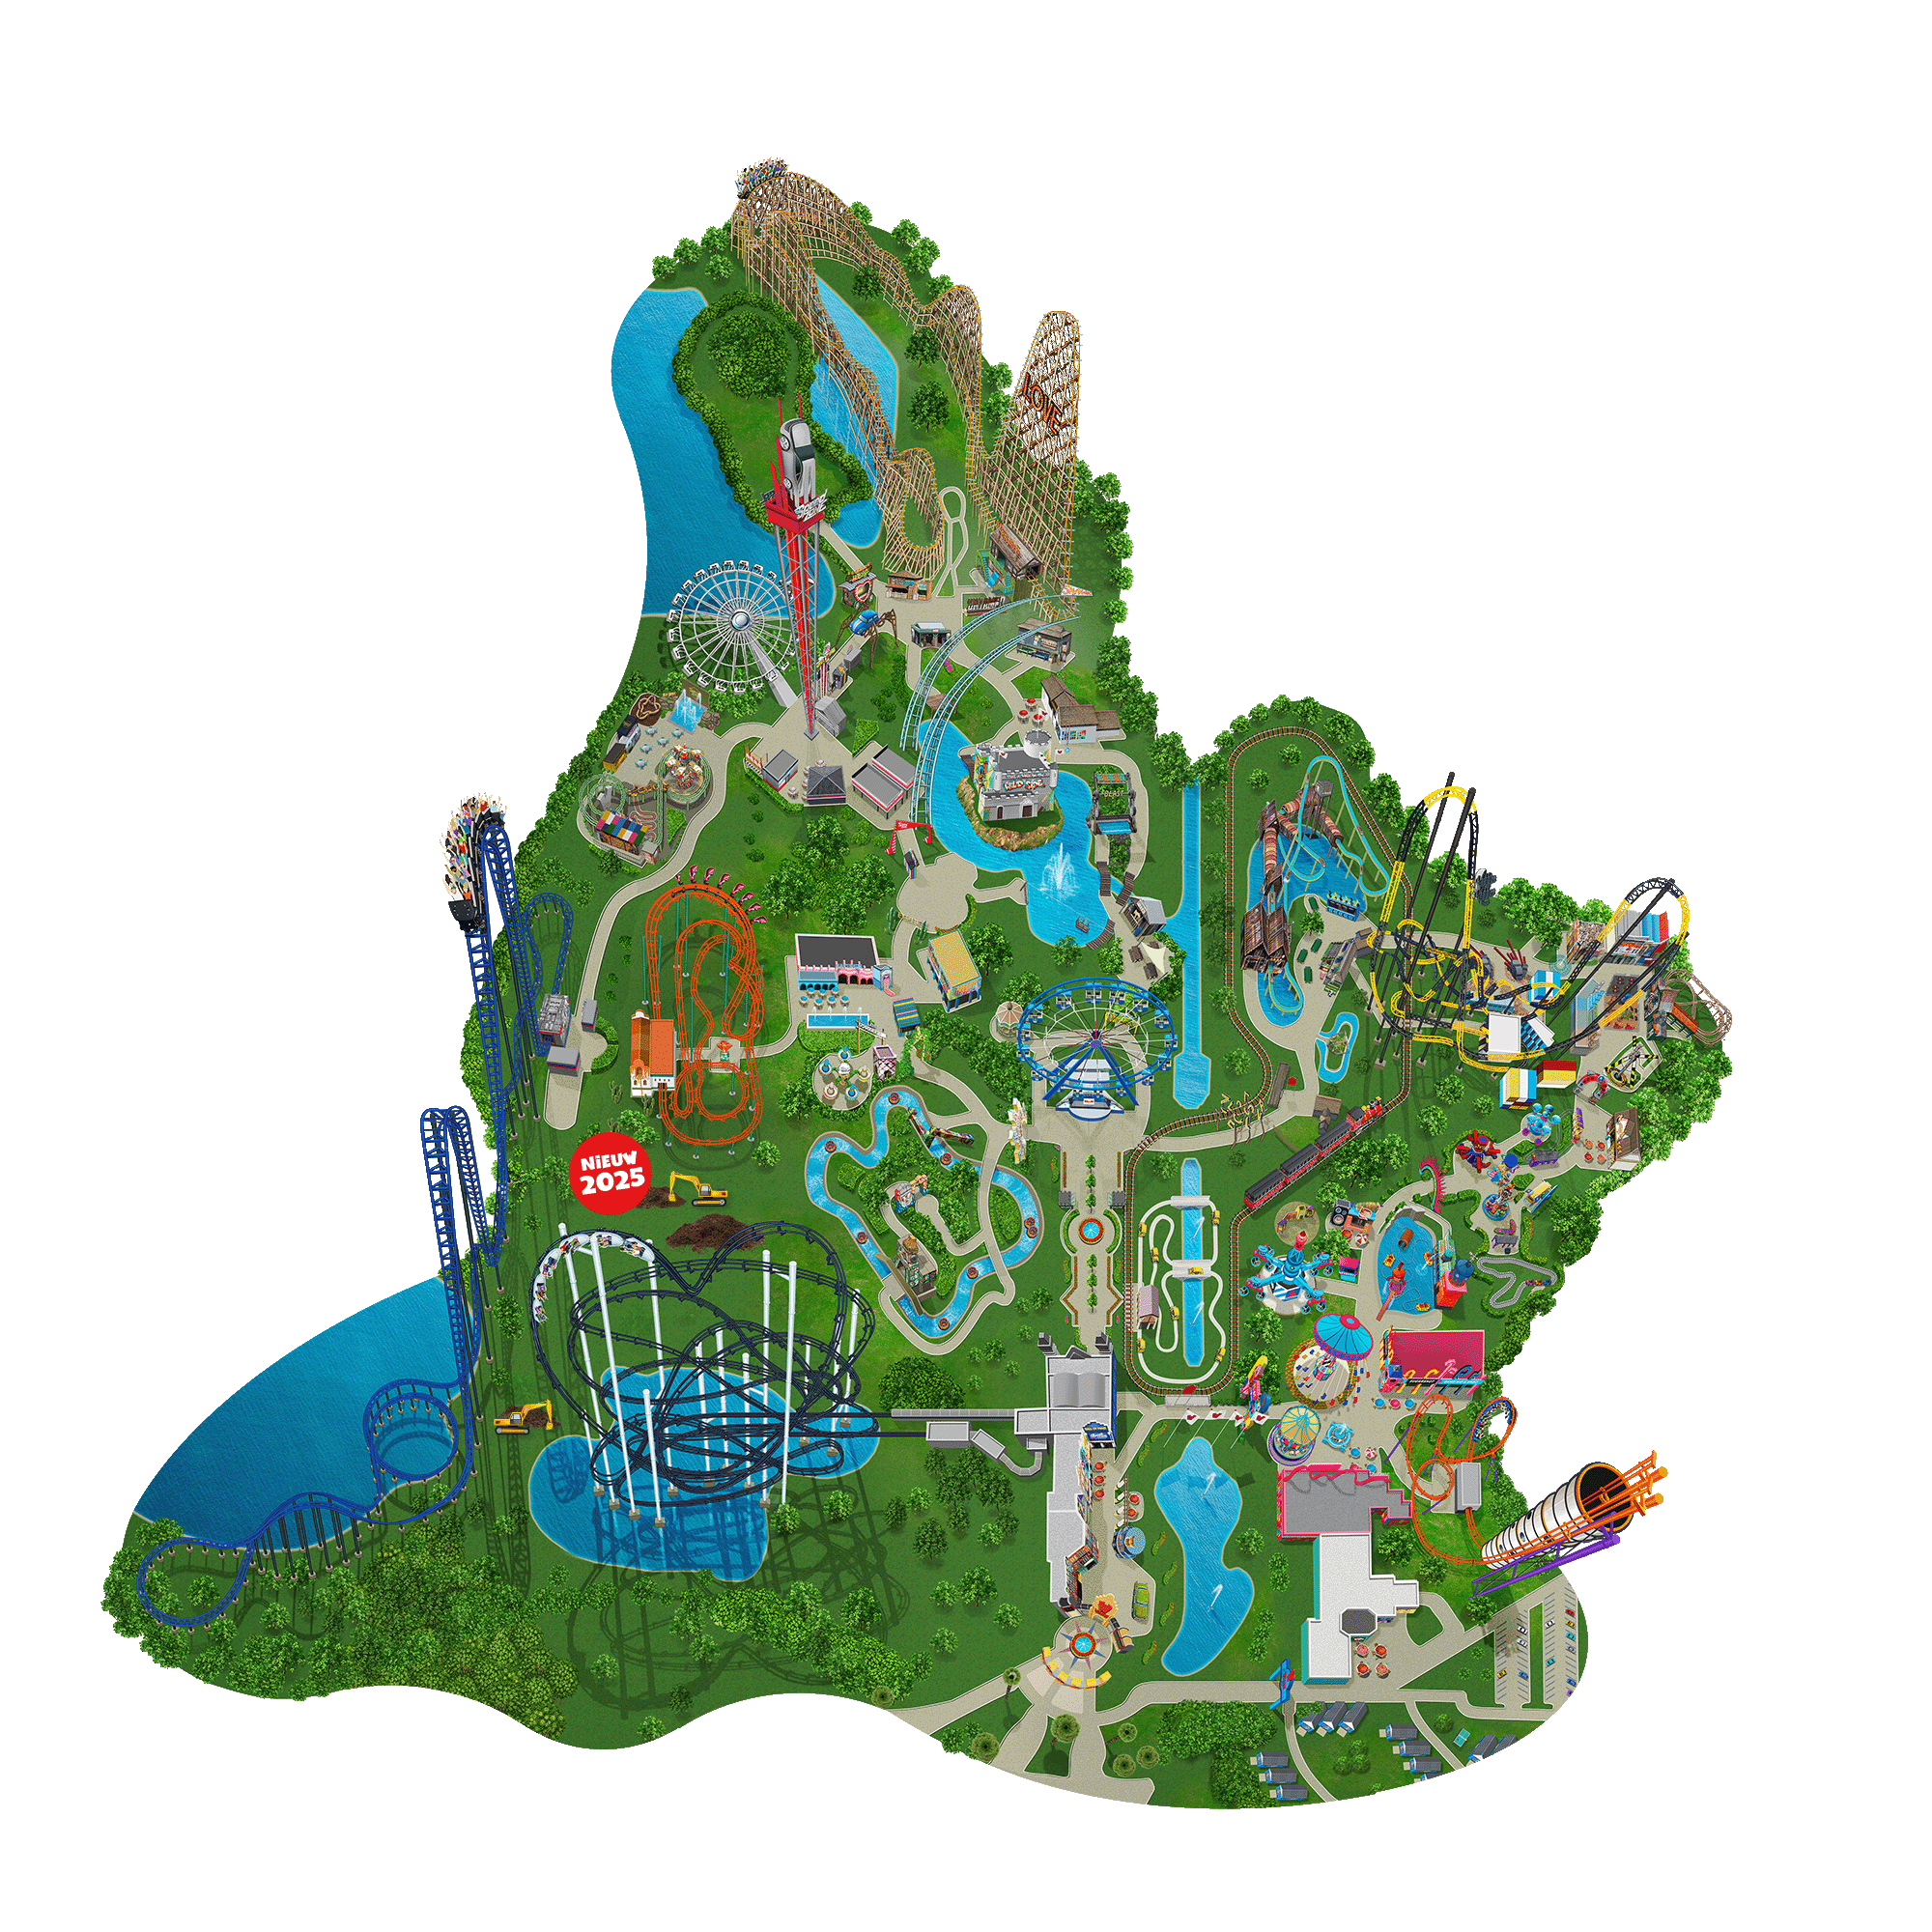 De plattegrond van het park.